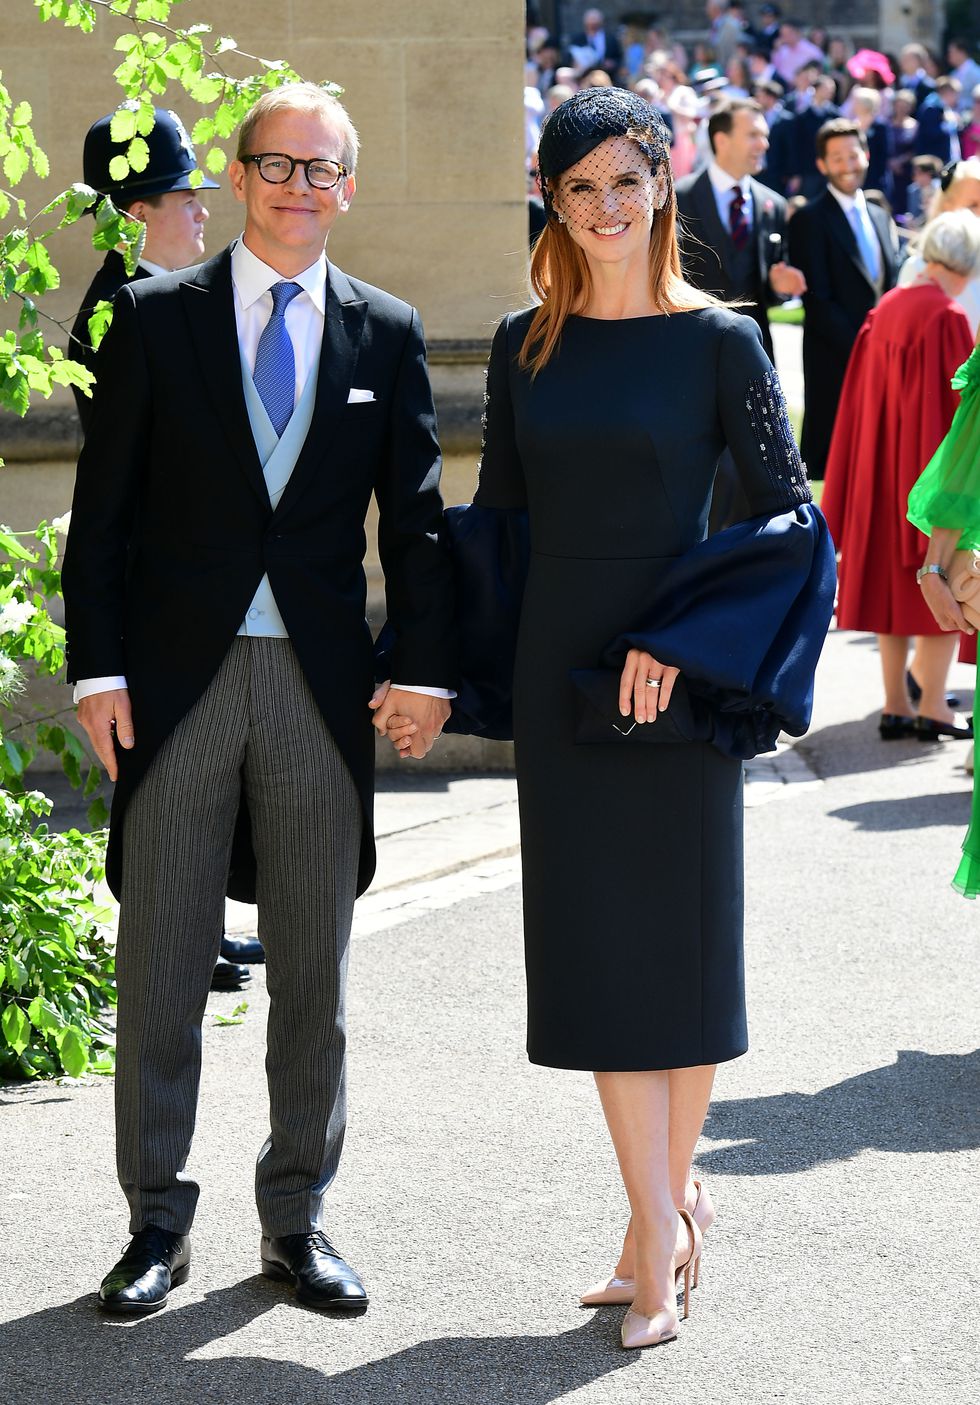 Royal Wedding A-List Guests Fashion